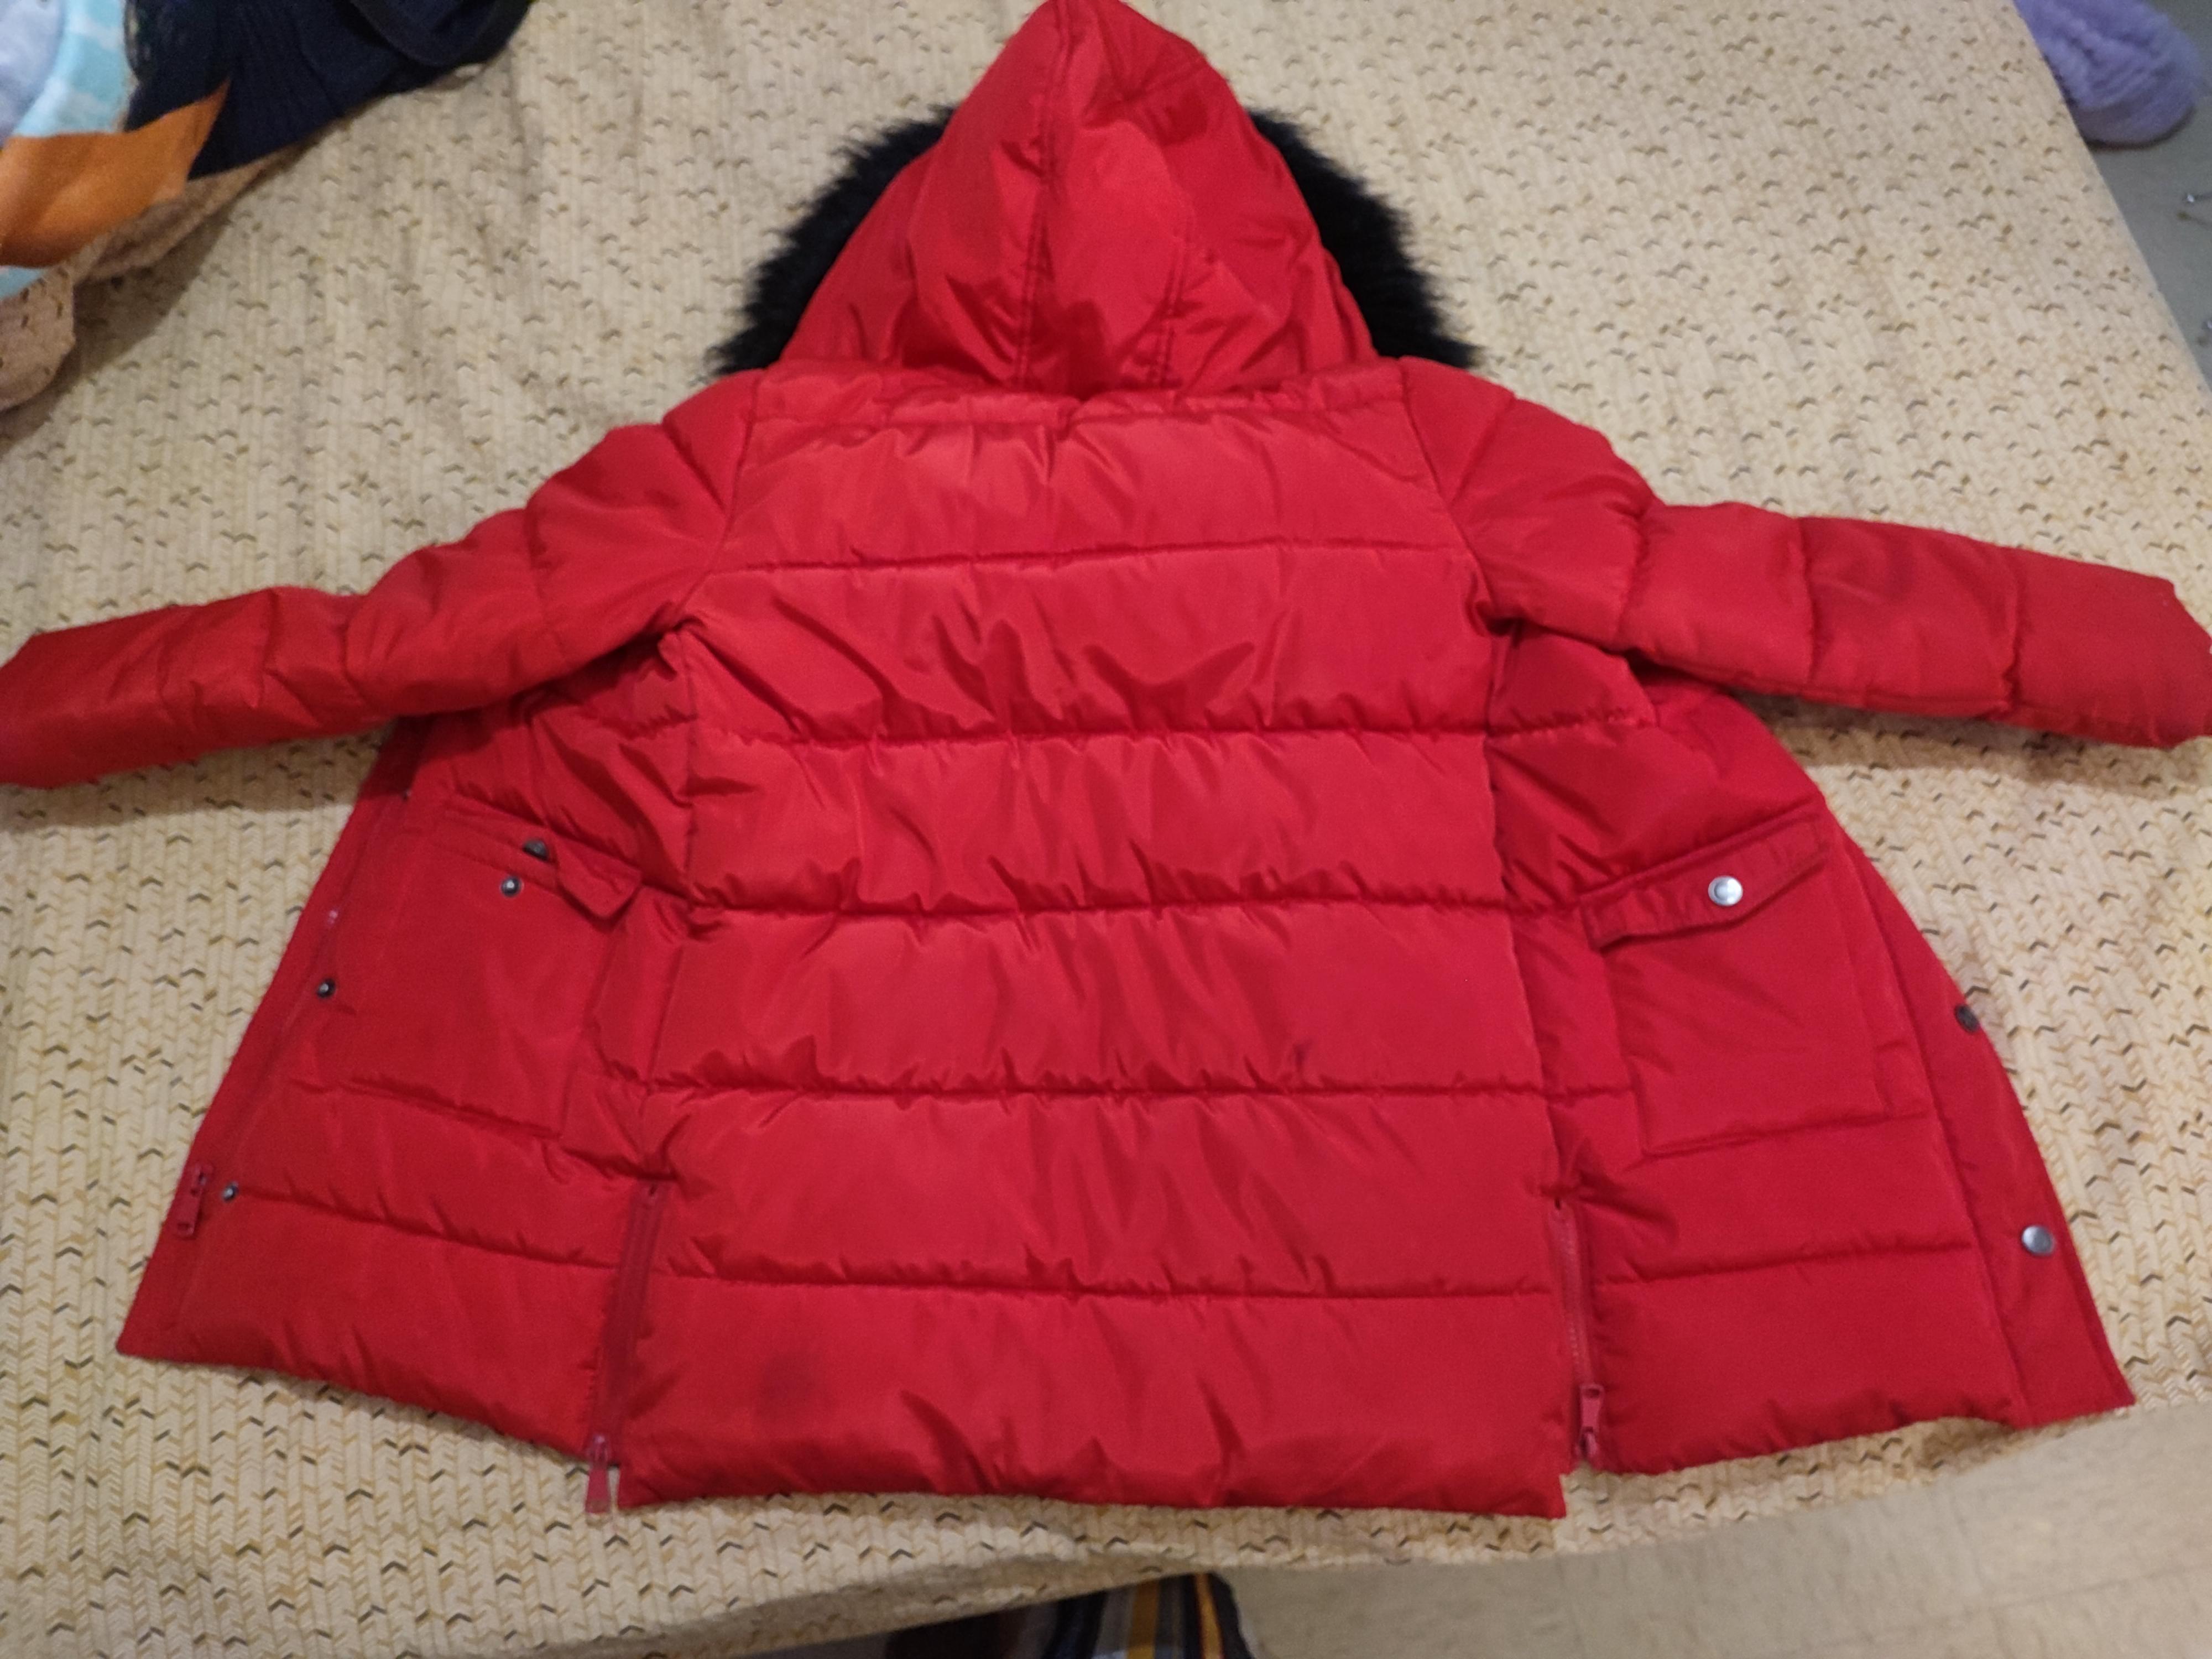 troc de troc manteau rouge gemo image 1